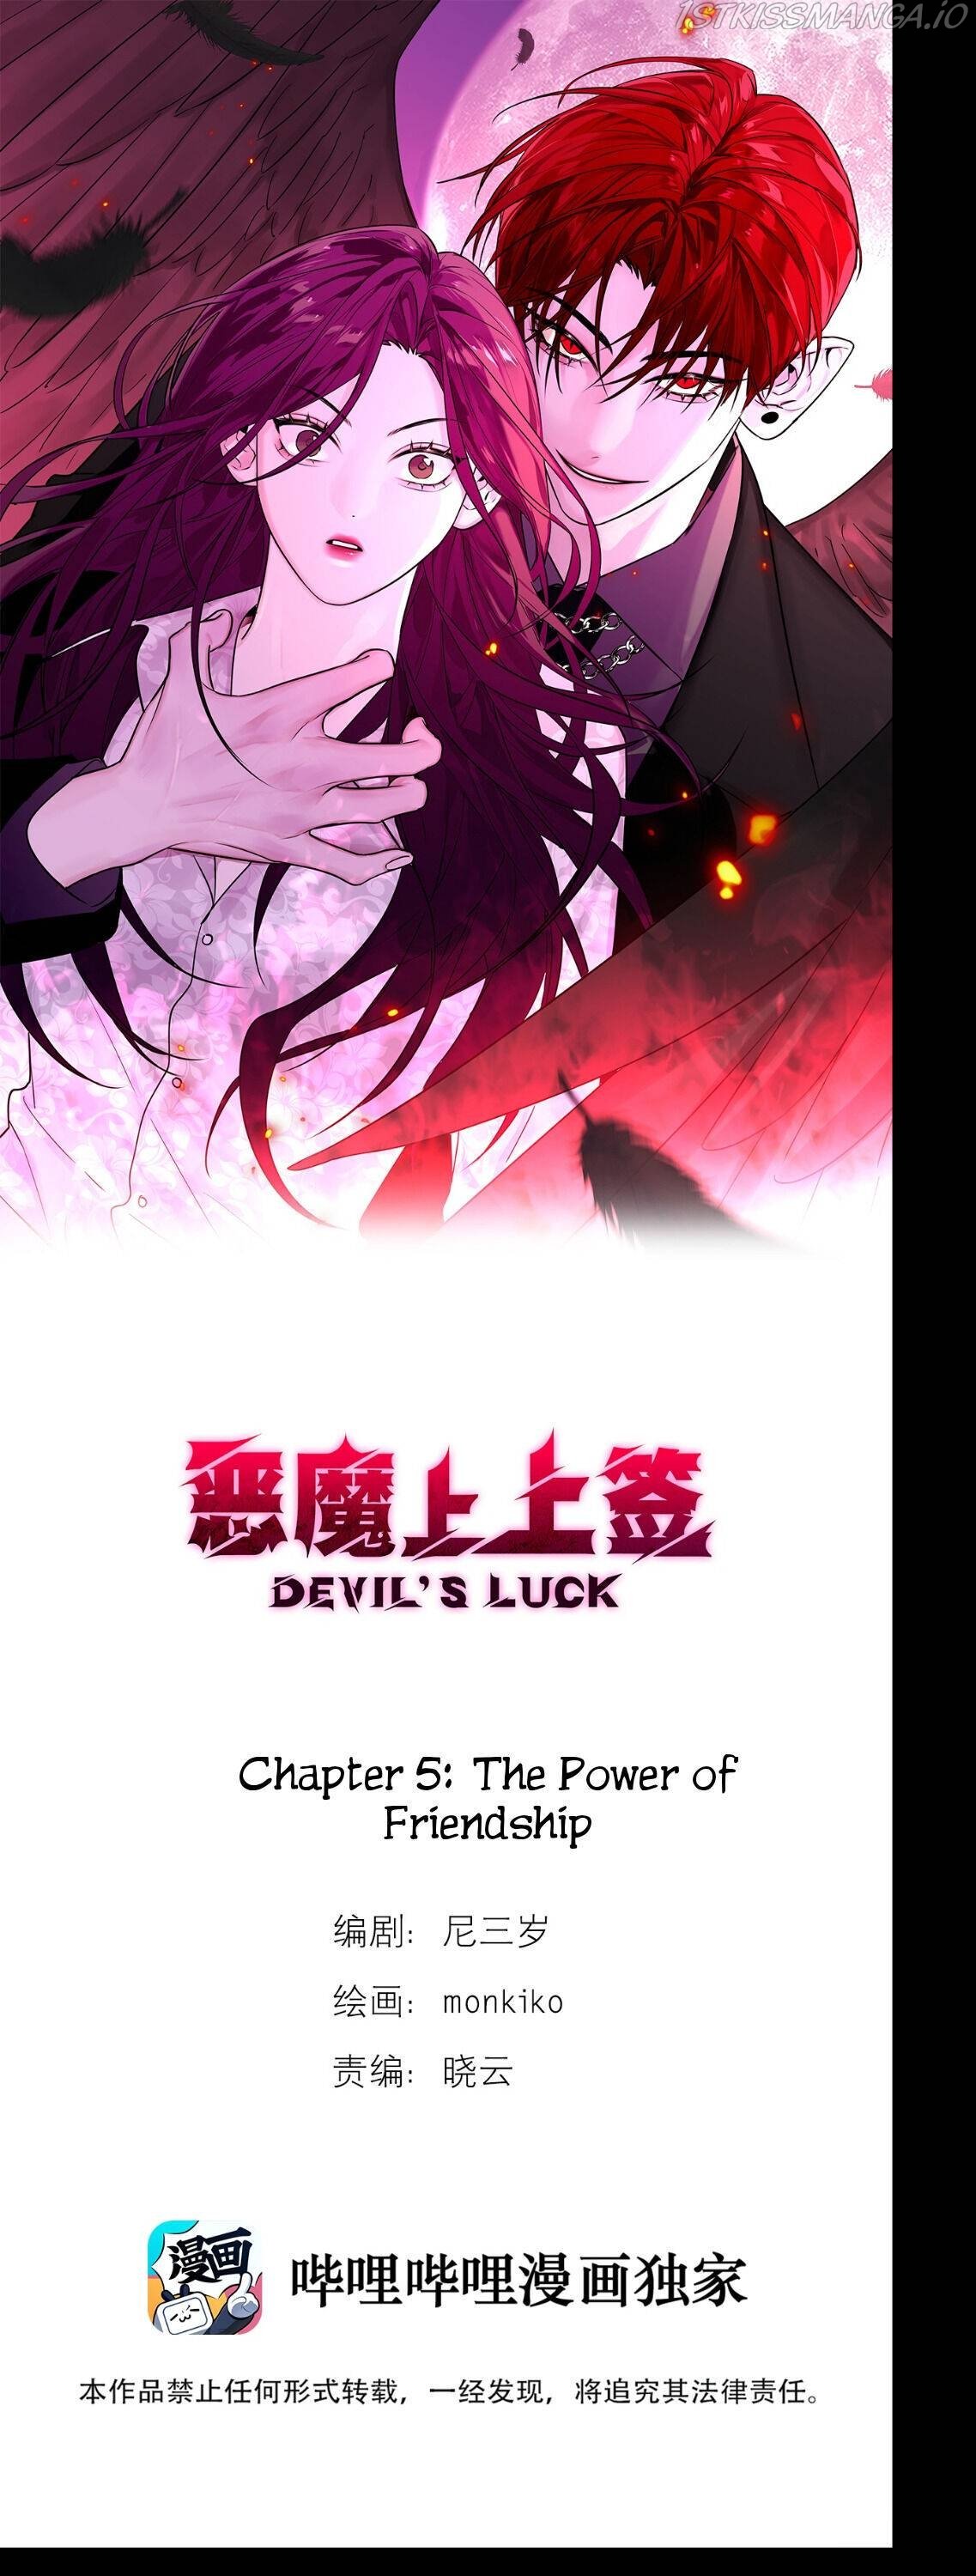 Devil’s Luck chapter 5